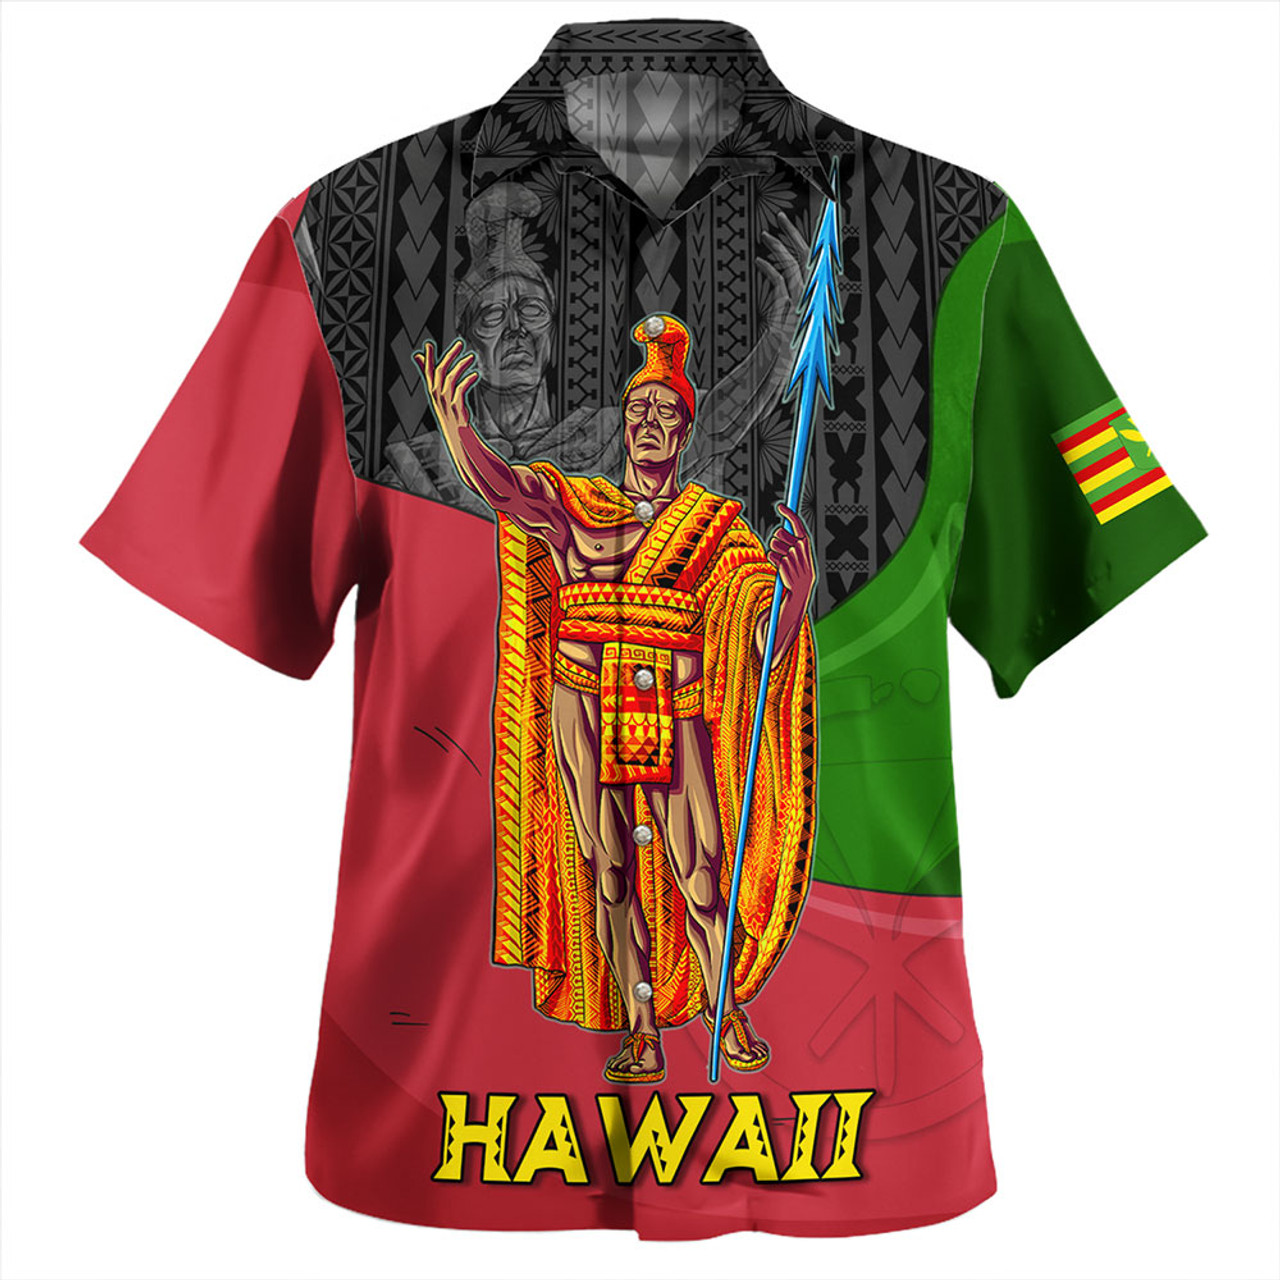 Hawaii Hawaiian Shirt Hawaii King With Map And Flag Tribal Patterns